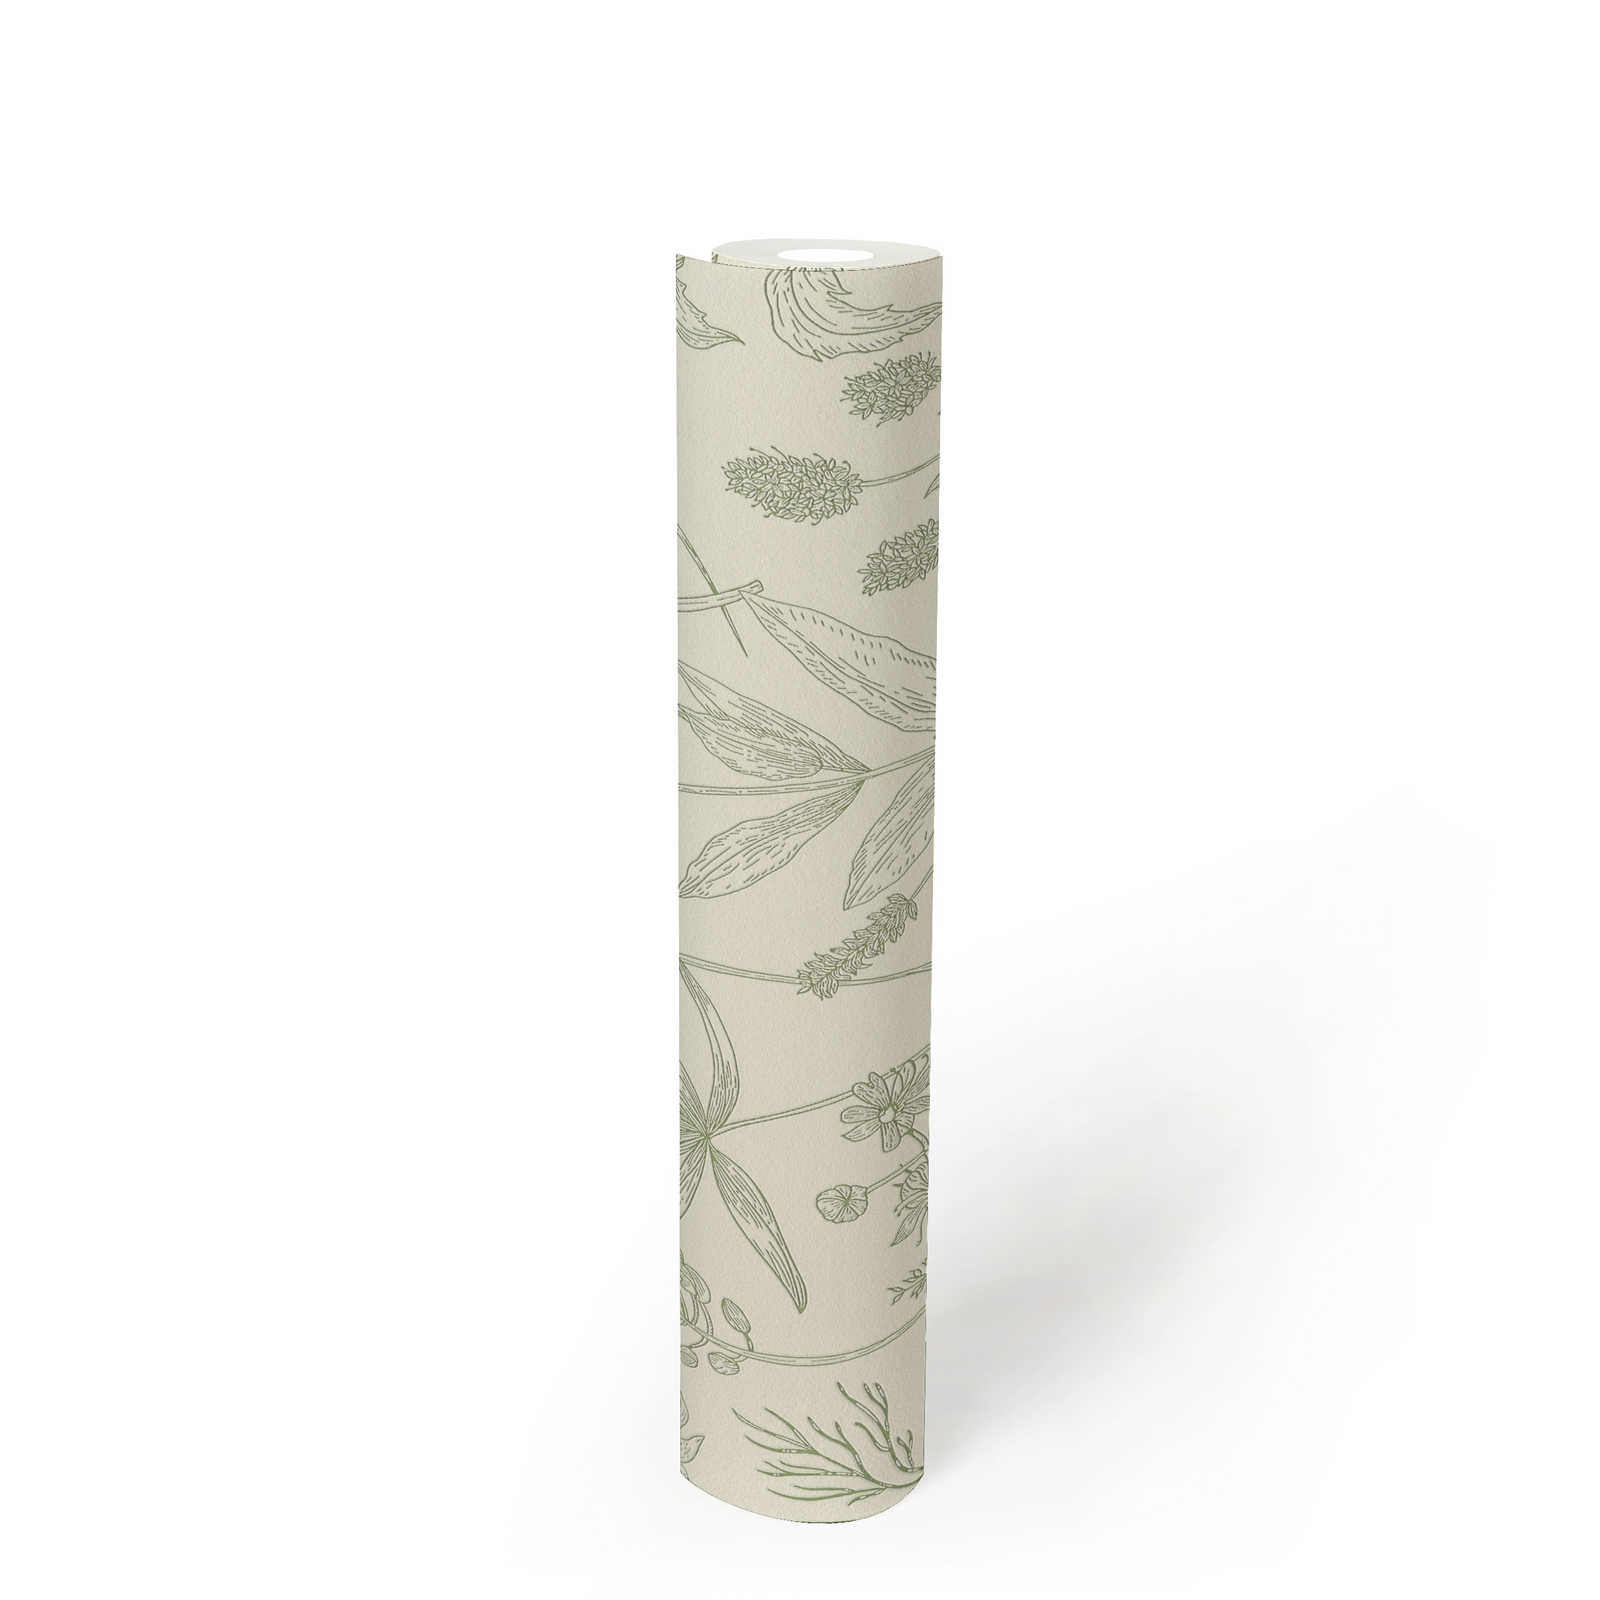             Vliestapete mit Blütenmuster und Metallic-Akzent – Grün, Silber, Weiß
        